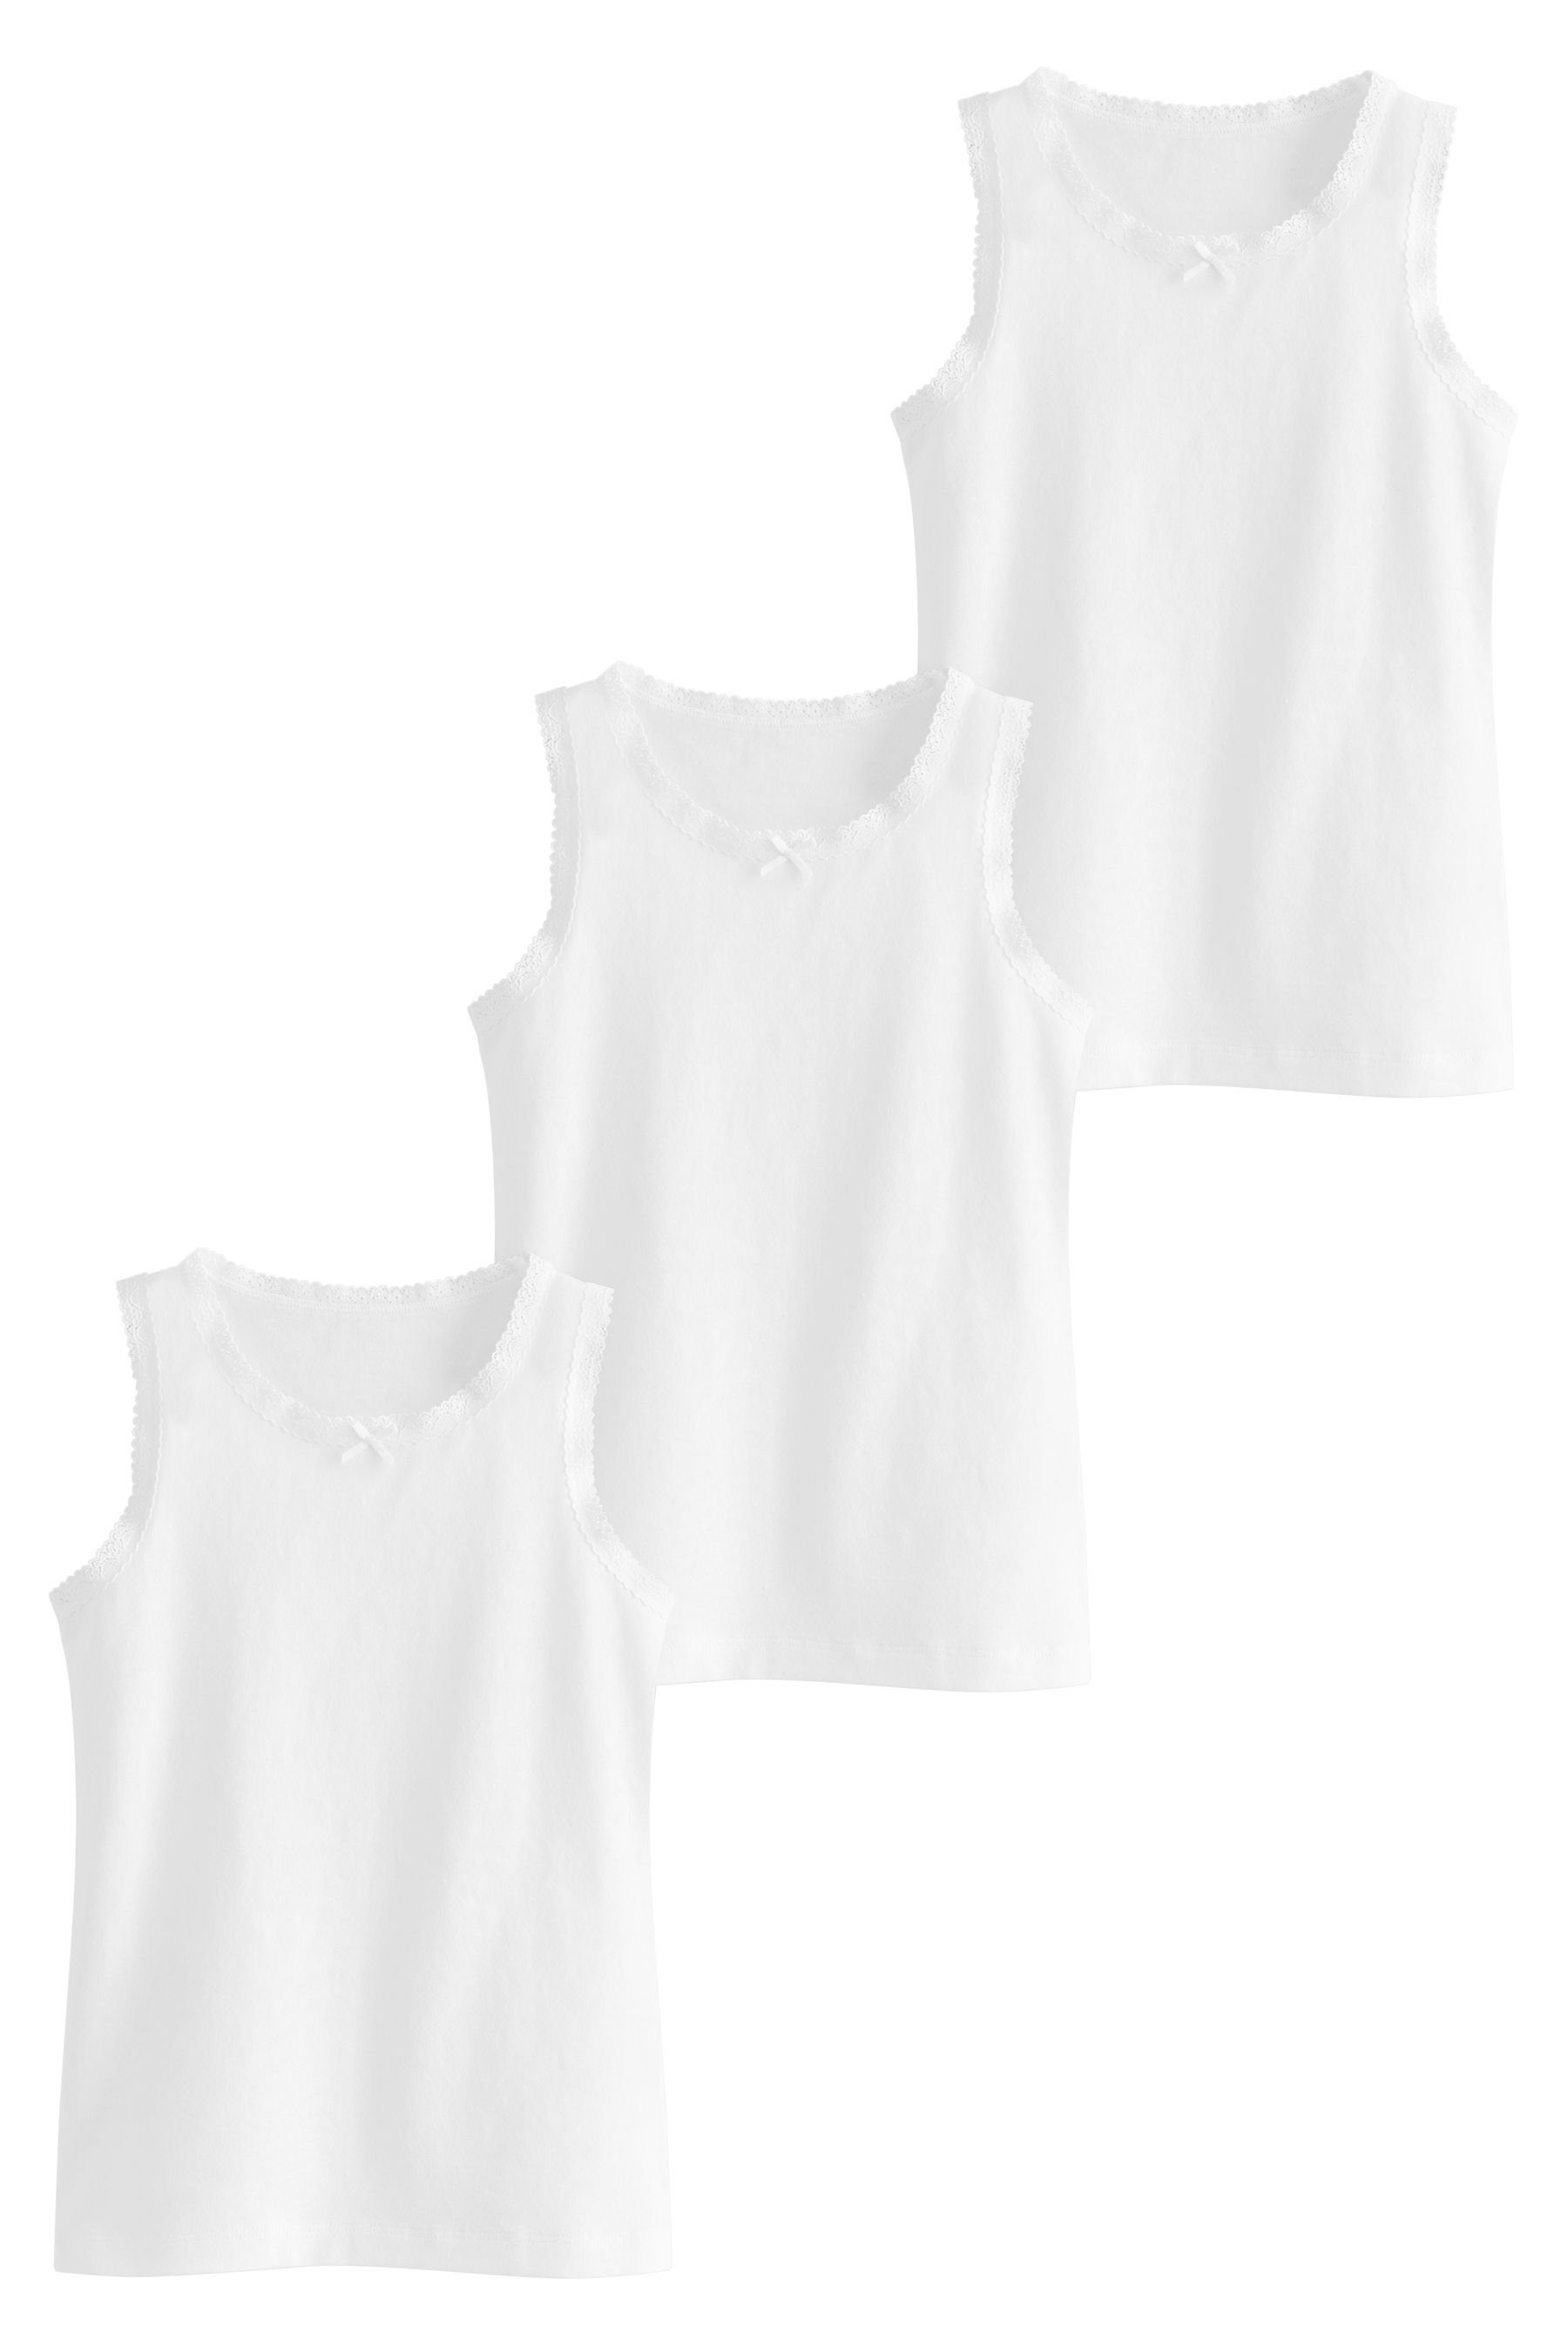 Unterhemden Lace 3er-Pack mit Next White im Unterhemd Lochstickerei (3-St)